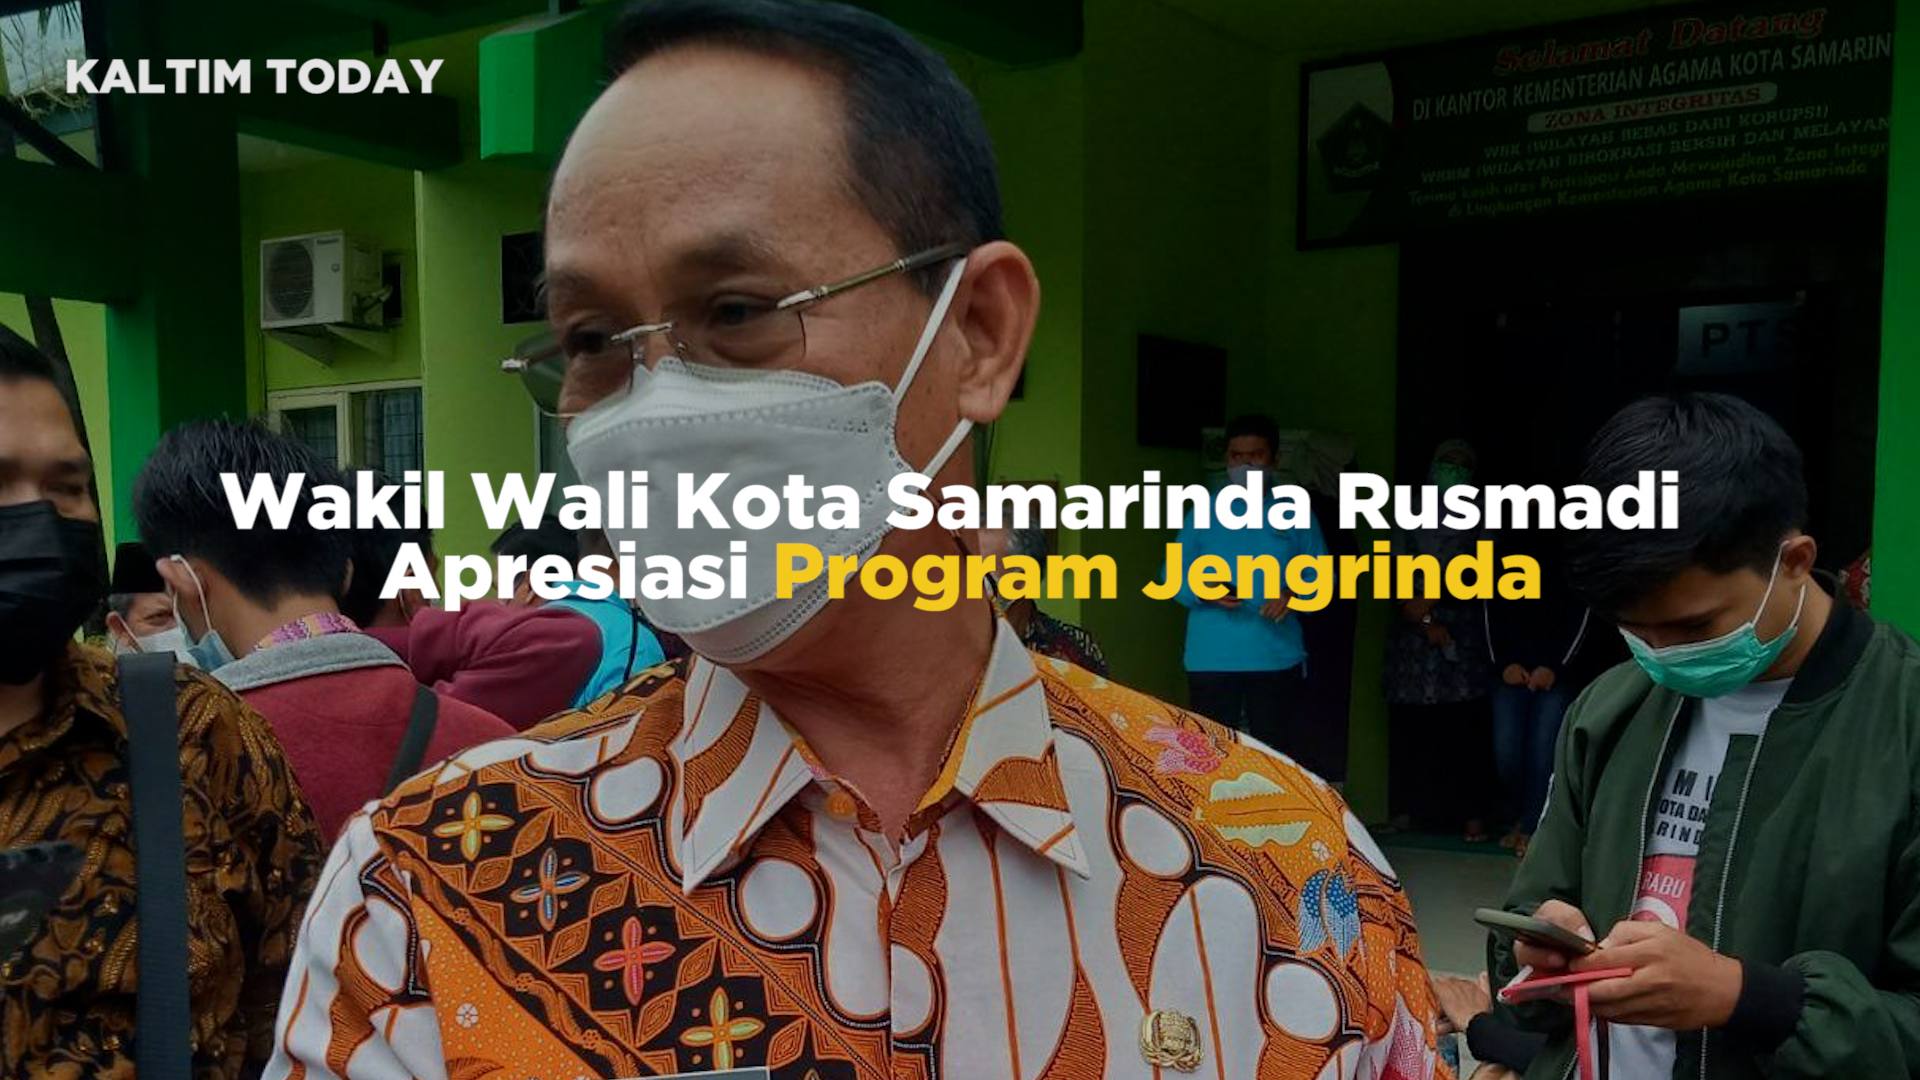 Wakil Wali Kota Samarinda Rusmadi Apresiasi Program Jengrinda, Minta DLH Konsisten Ajak Warga